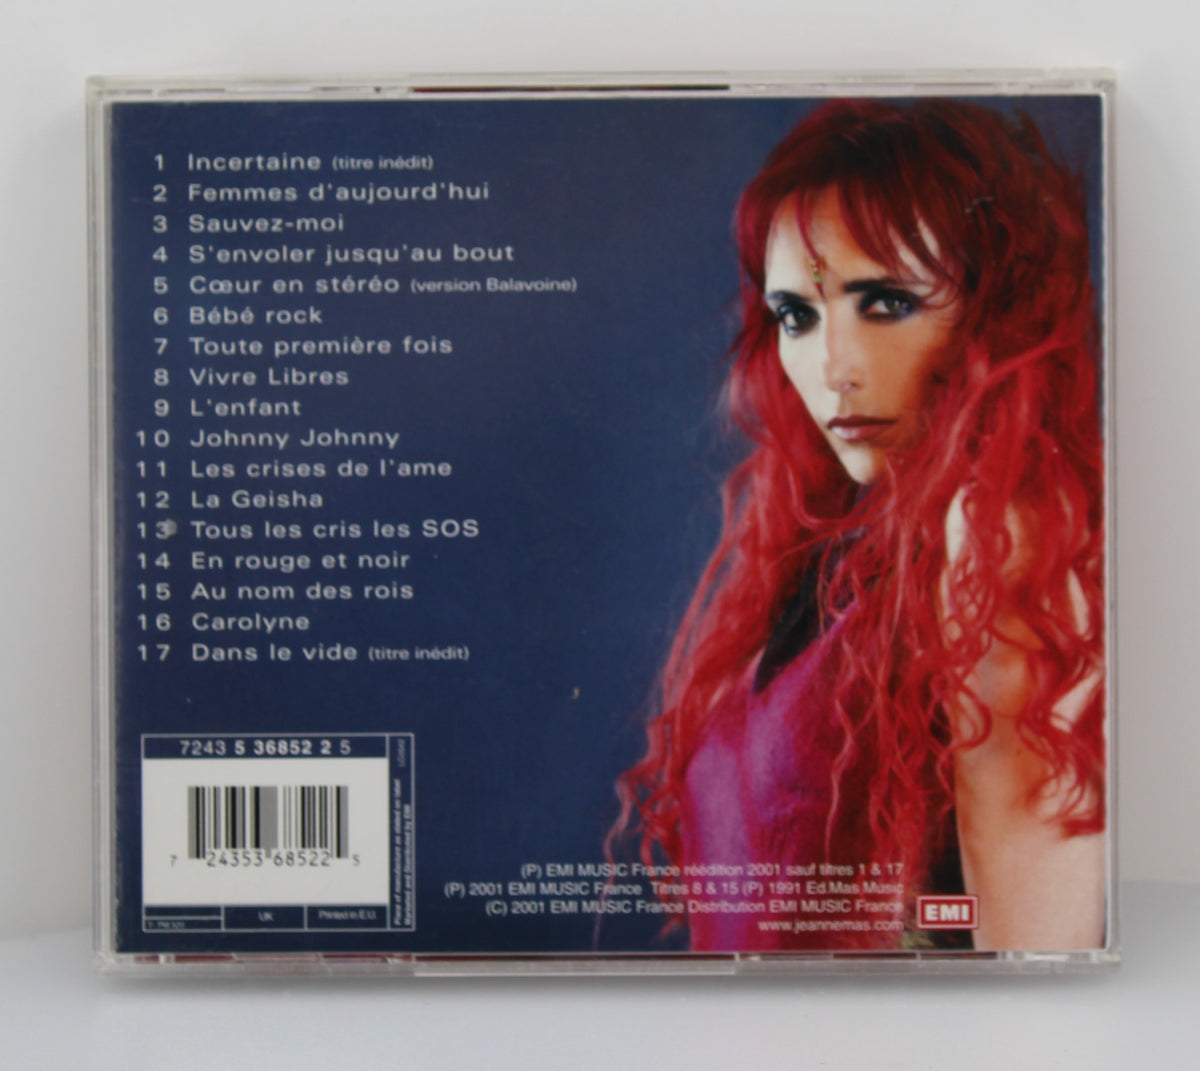 Jeanne Mas – Le Meilleur De Jeanne Mas, CD, Compilation, France 2001